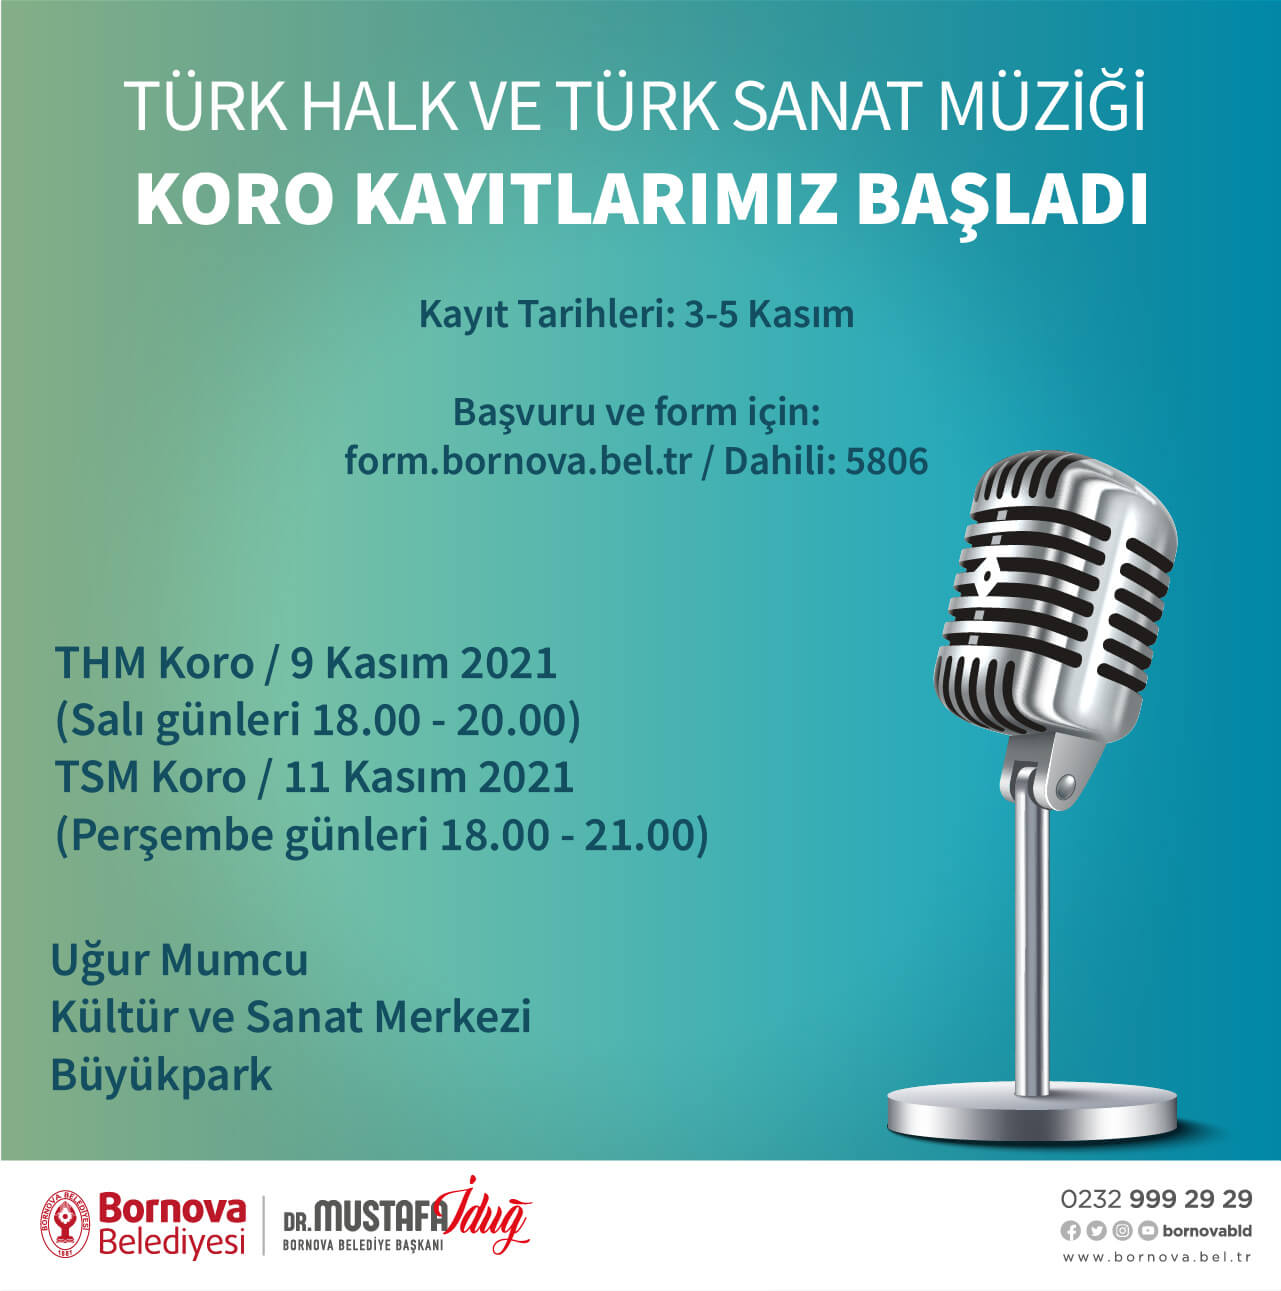 Bornova Belediyesi Türk Halk ve Türk Sanat Müziği koroları yeni koristler arıyor.